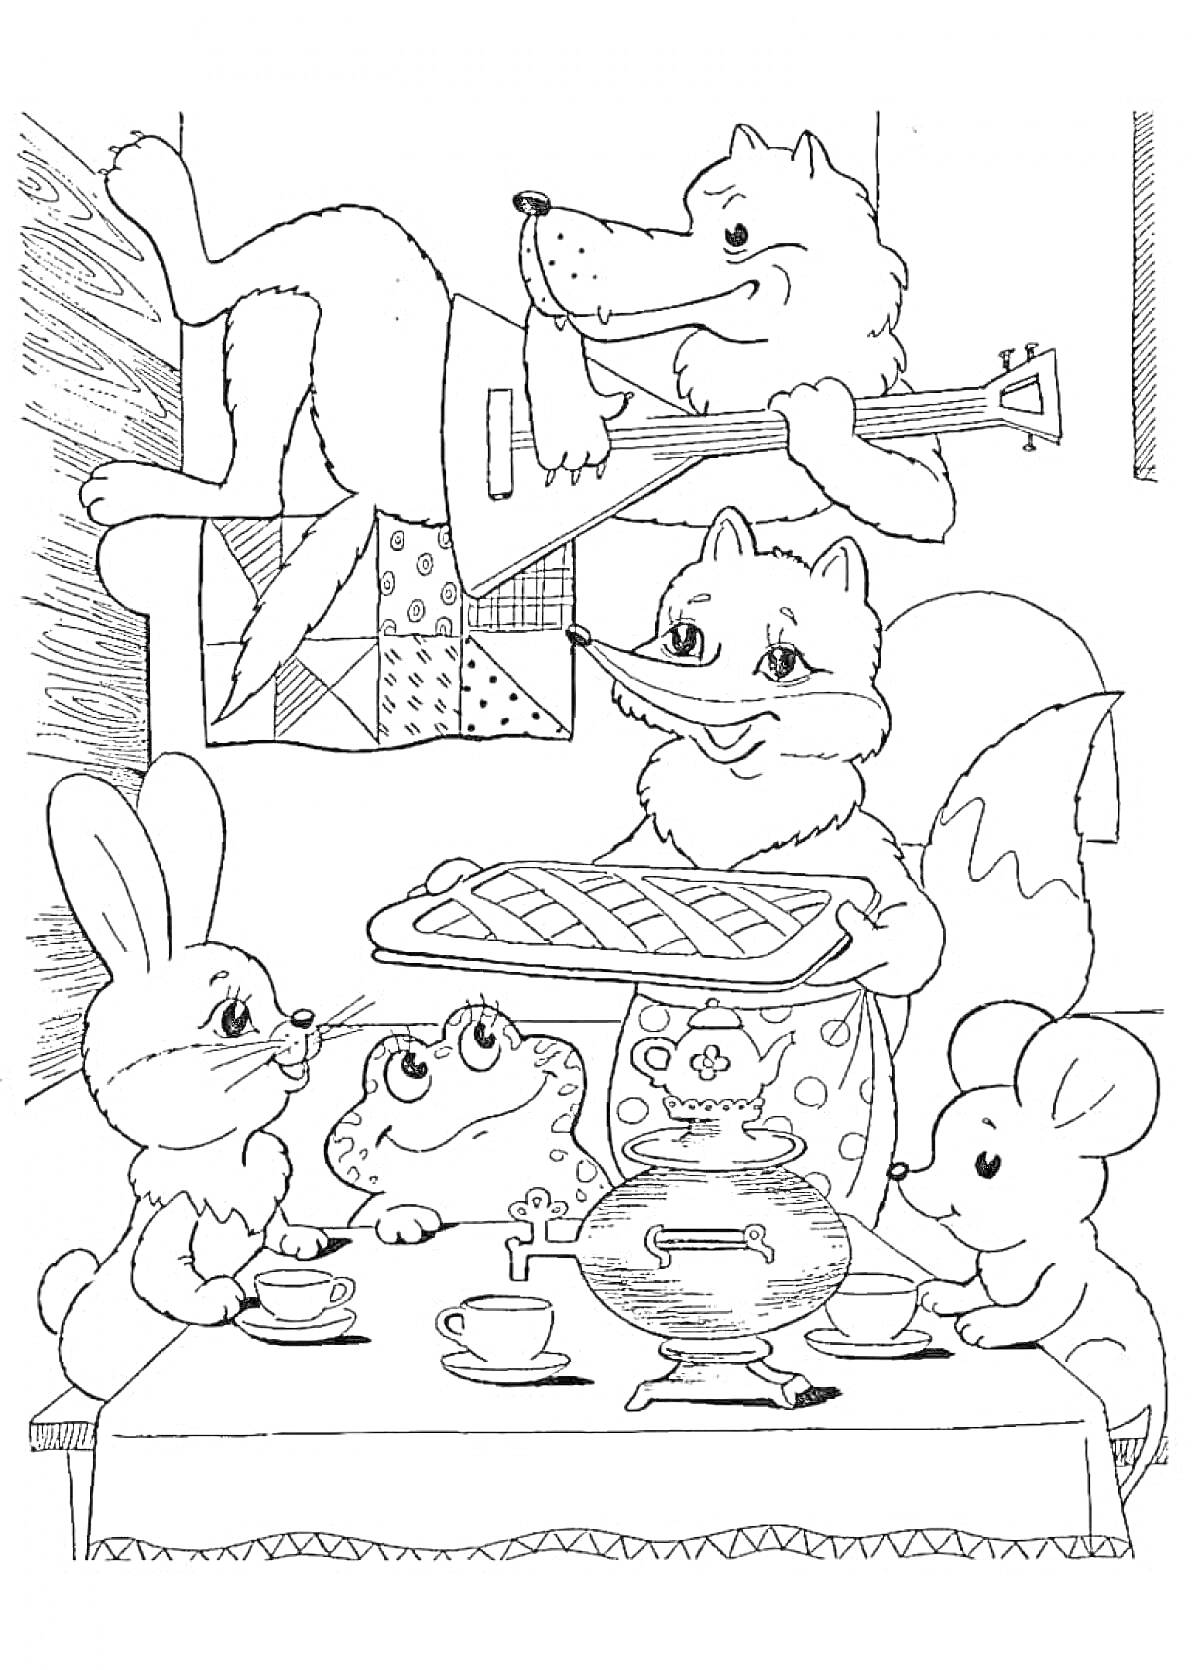 На раскраске изображено: Теремок, Лиса, Волк, Пирог, Балалайка, Заяц, Мышь, Лягушки